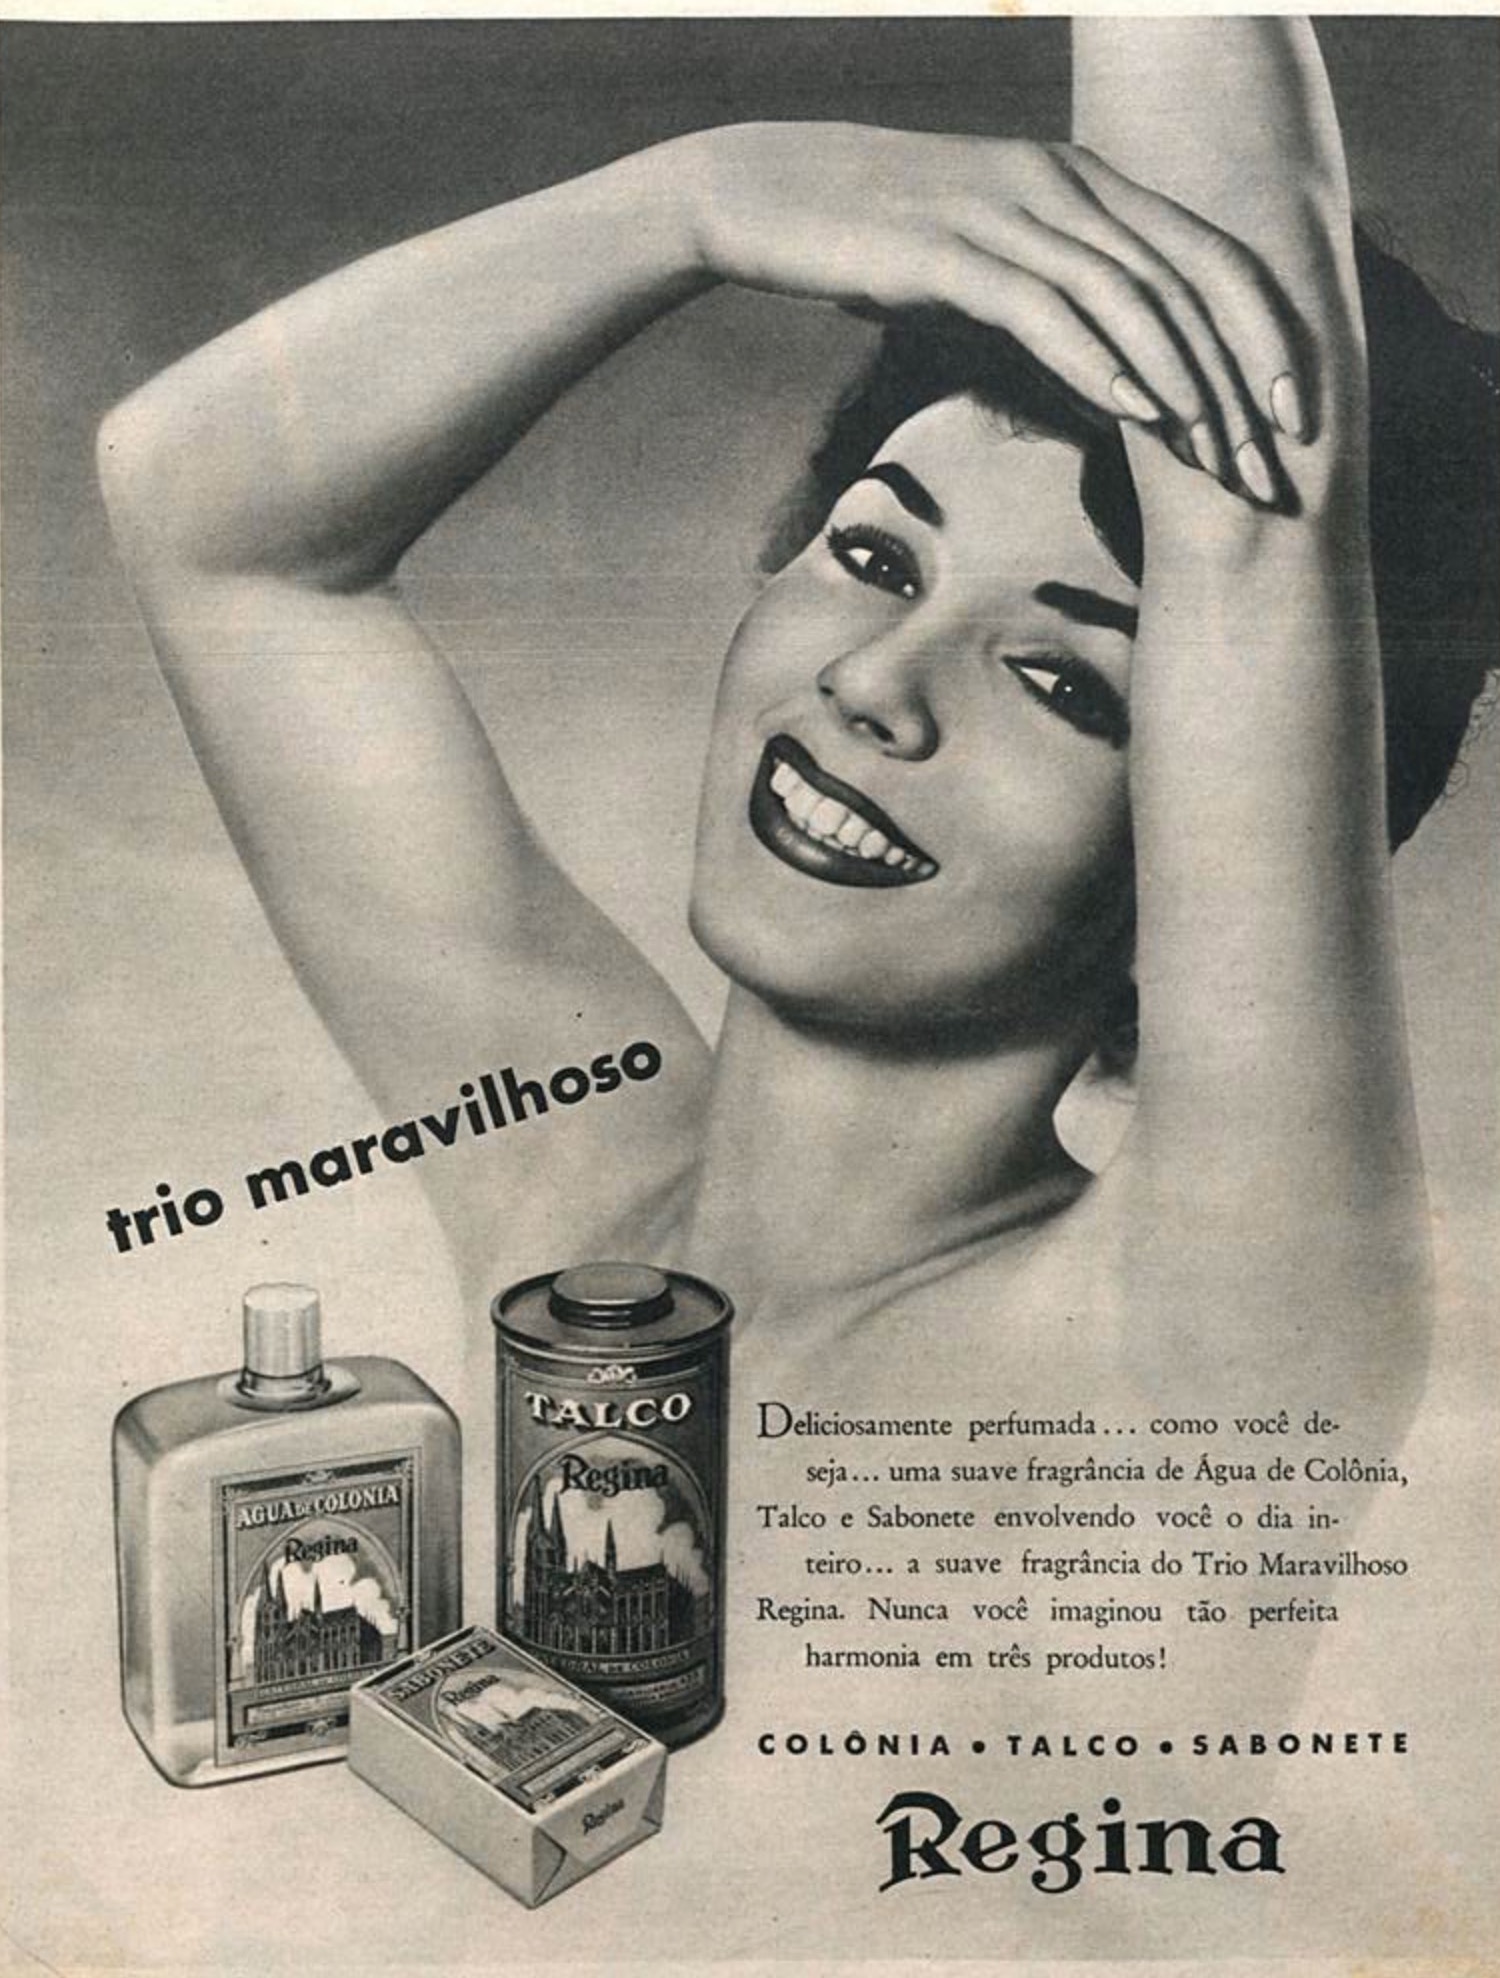 Anúncio veiculado em 1960 promovia a colônia, talco e sabonete da marca Regina